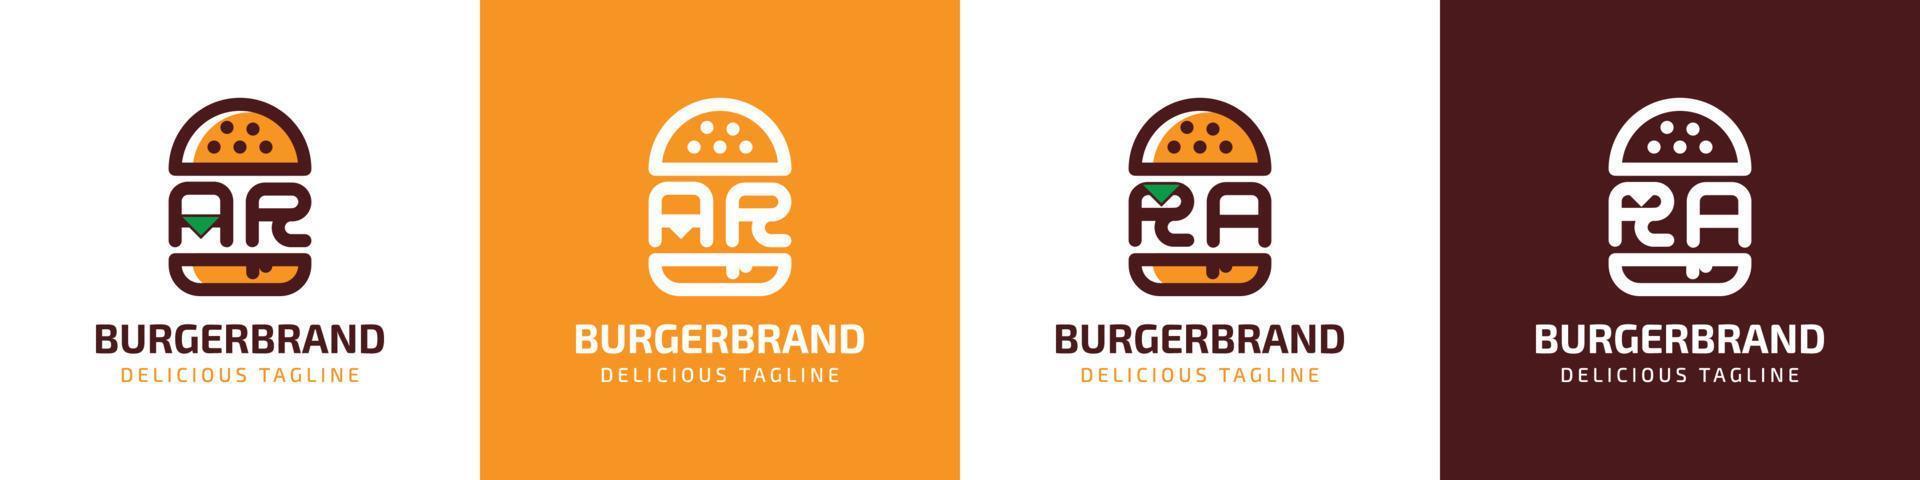 brev ar och ra burger logotyp, lämplig för några företag relaterad till burger med ar eller ra initialer. vektor